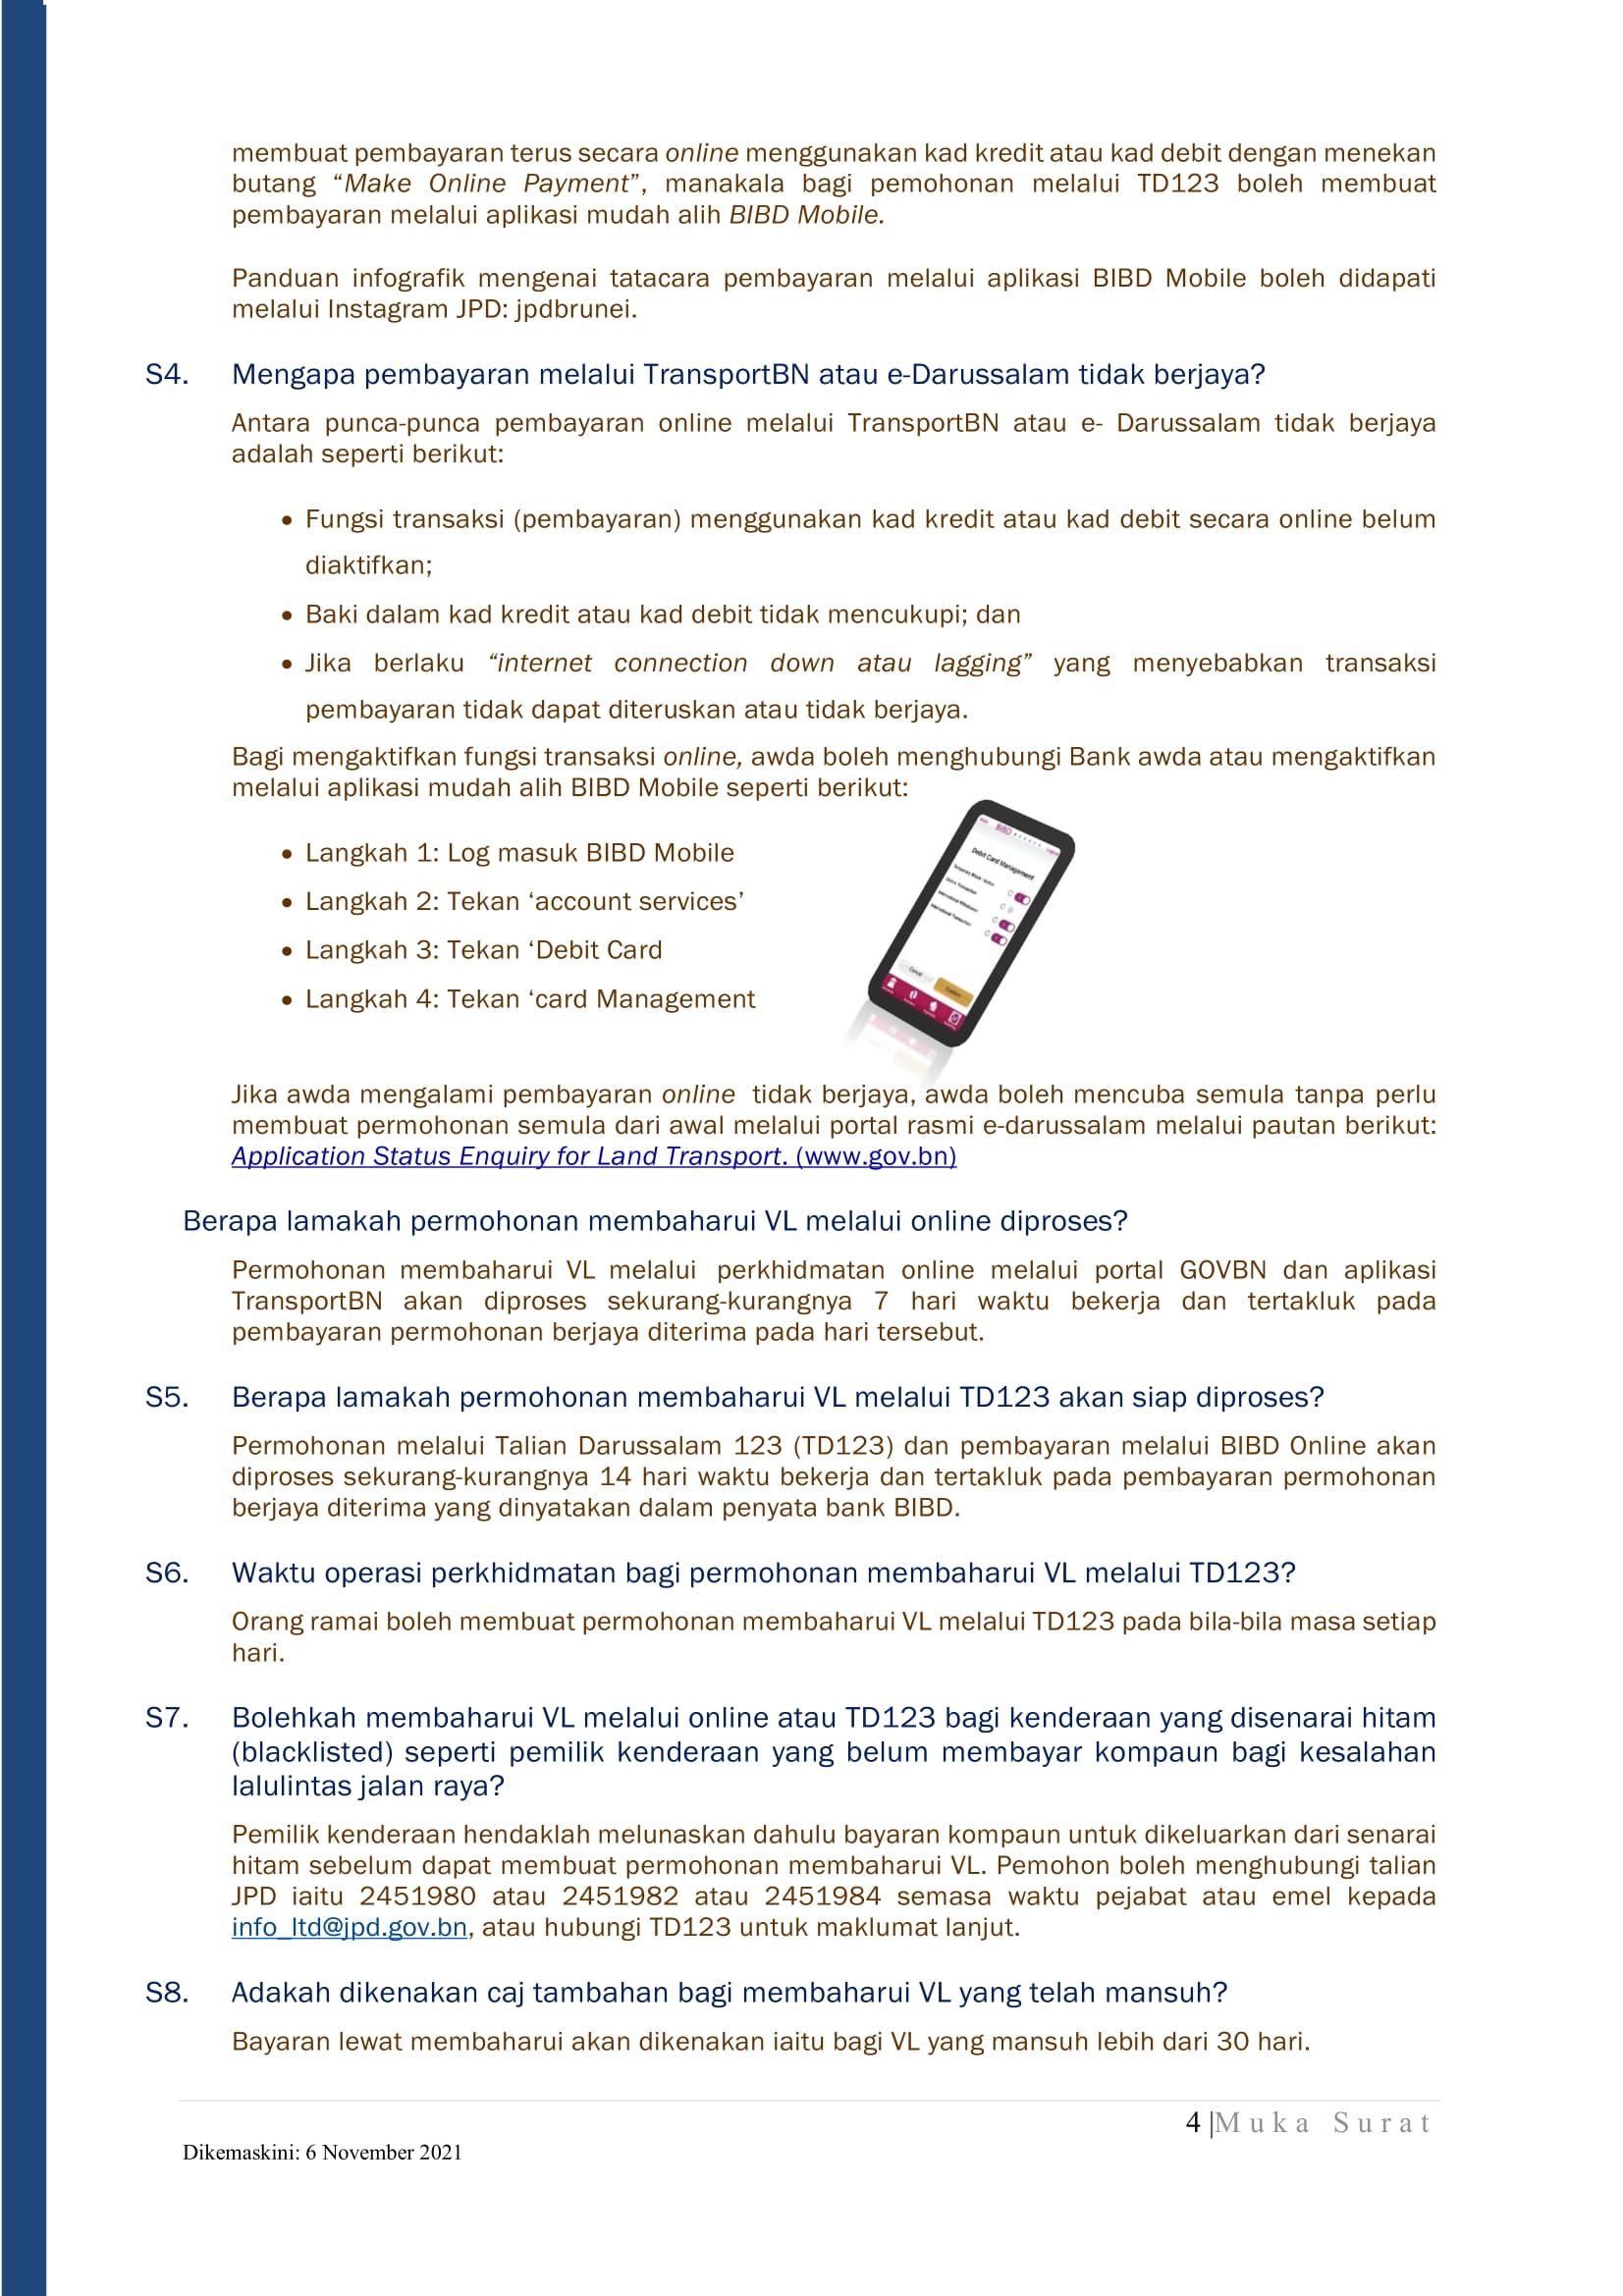 Terkini_FAQs Soalan-Soalan Lazim- Perkhidmatan JPD semasa COVID-19-page-004.jpg